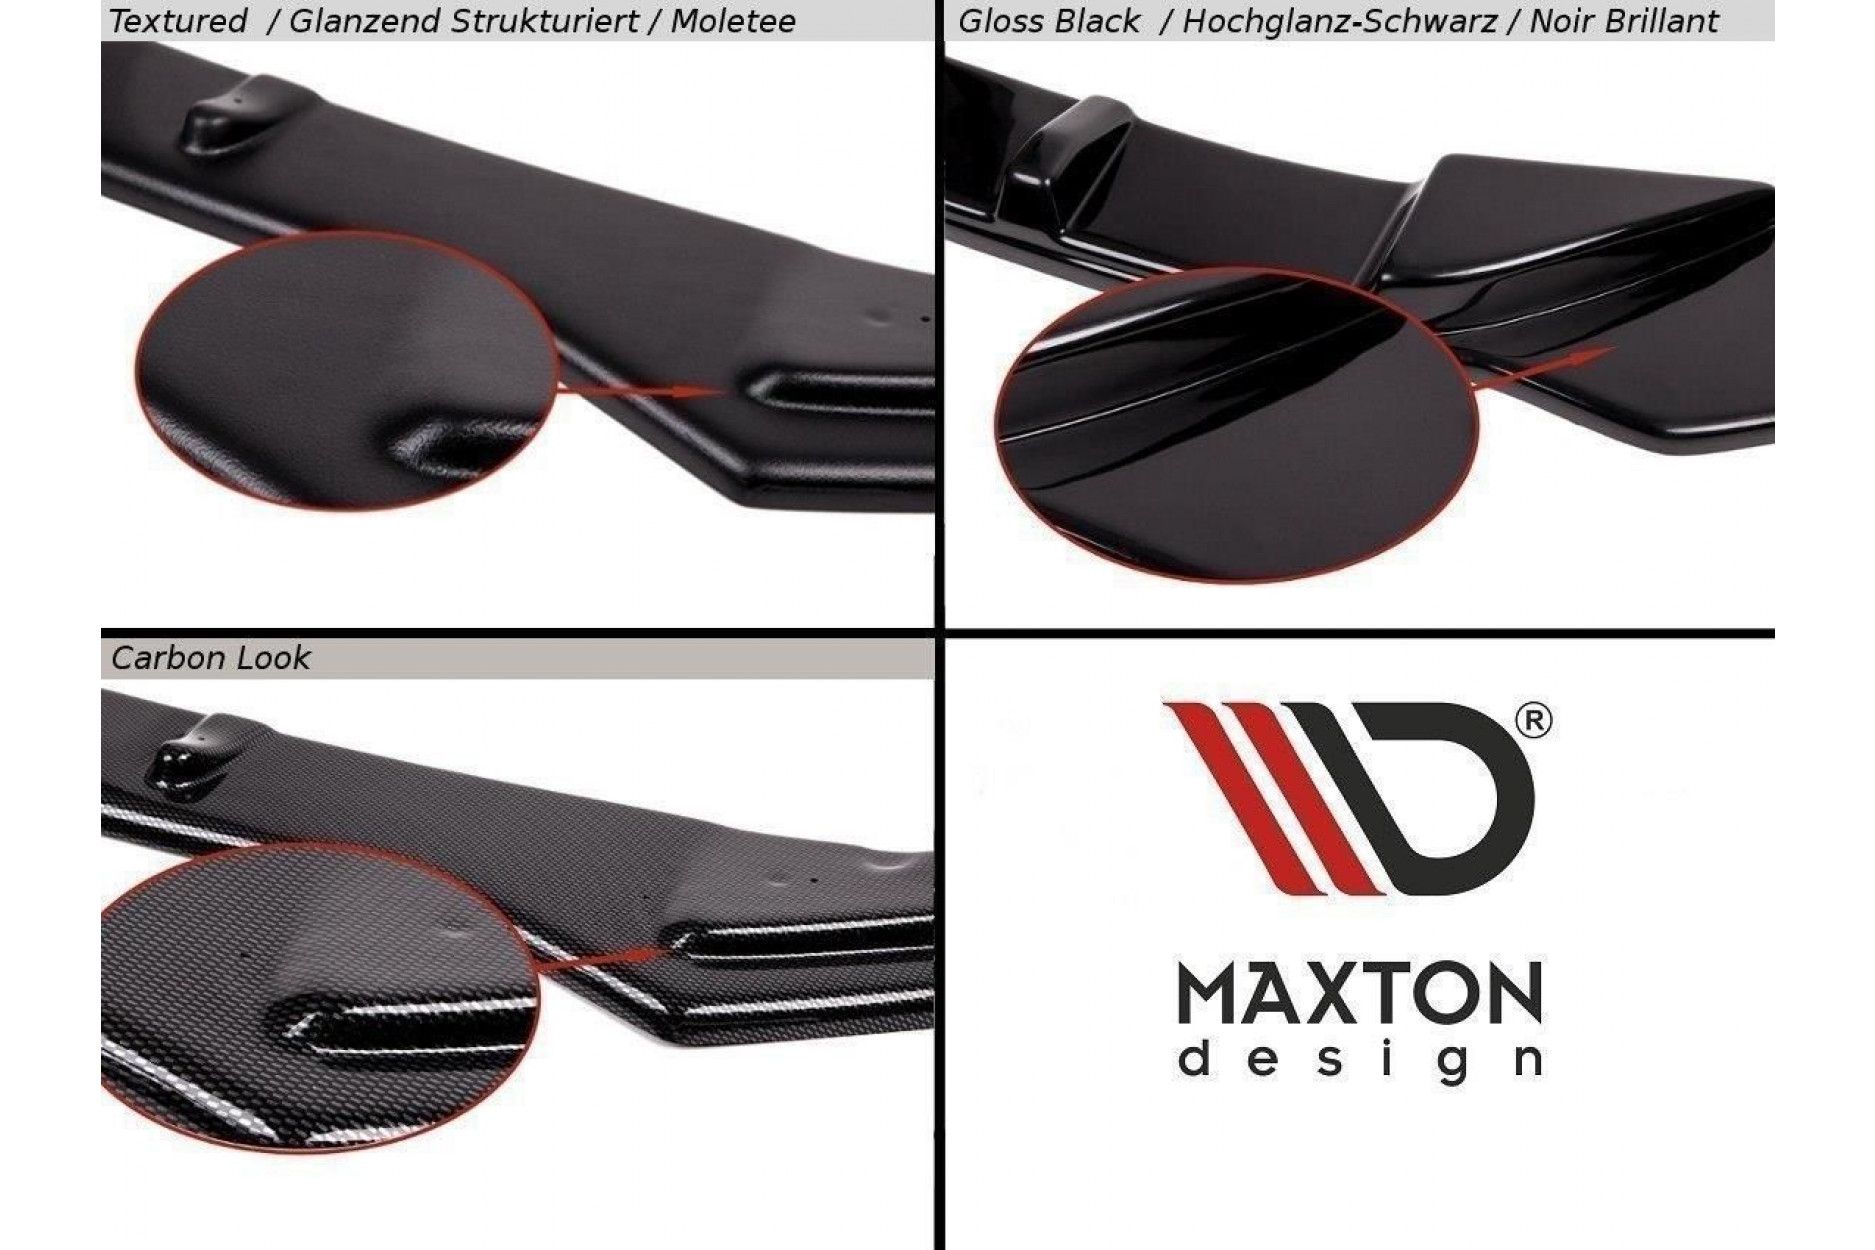 Maxton Design ABS Frontlippe für Volkswagen Touran schwarz hochglanz (4) 